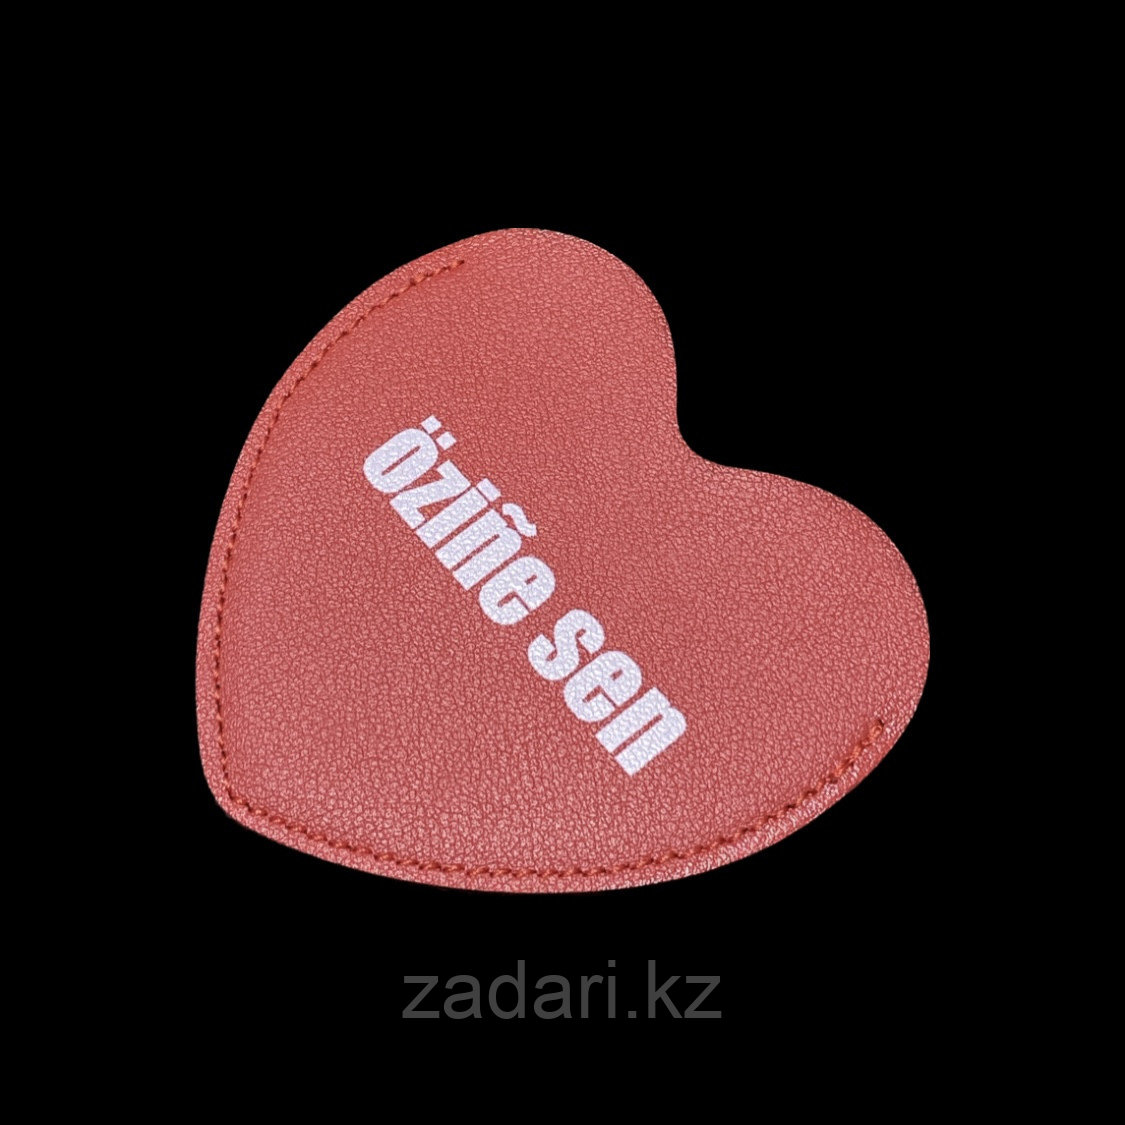 Зеркало «Özine sen» сердце с чехлом, фото 1